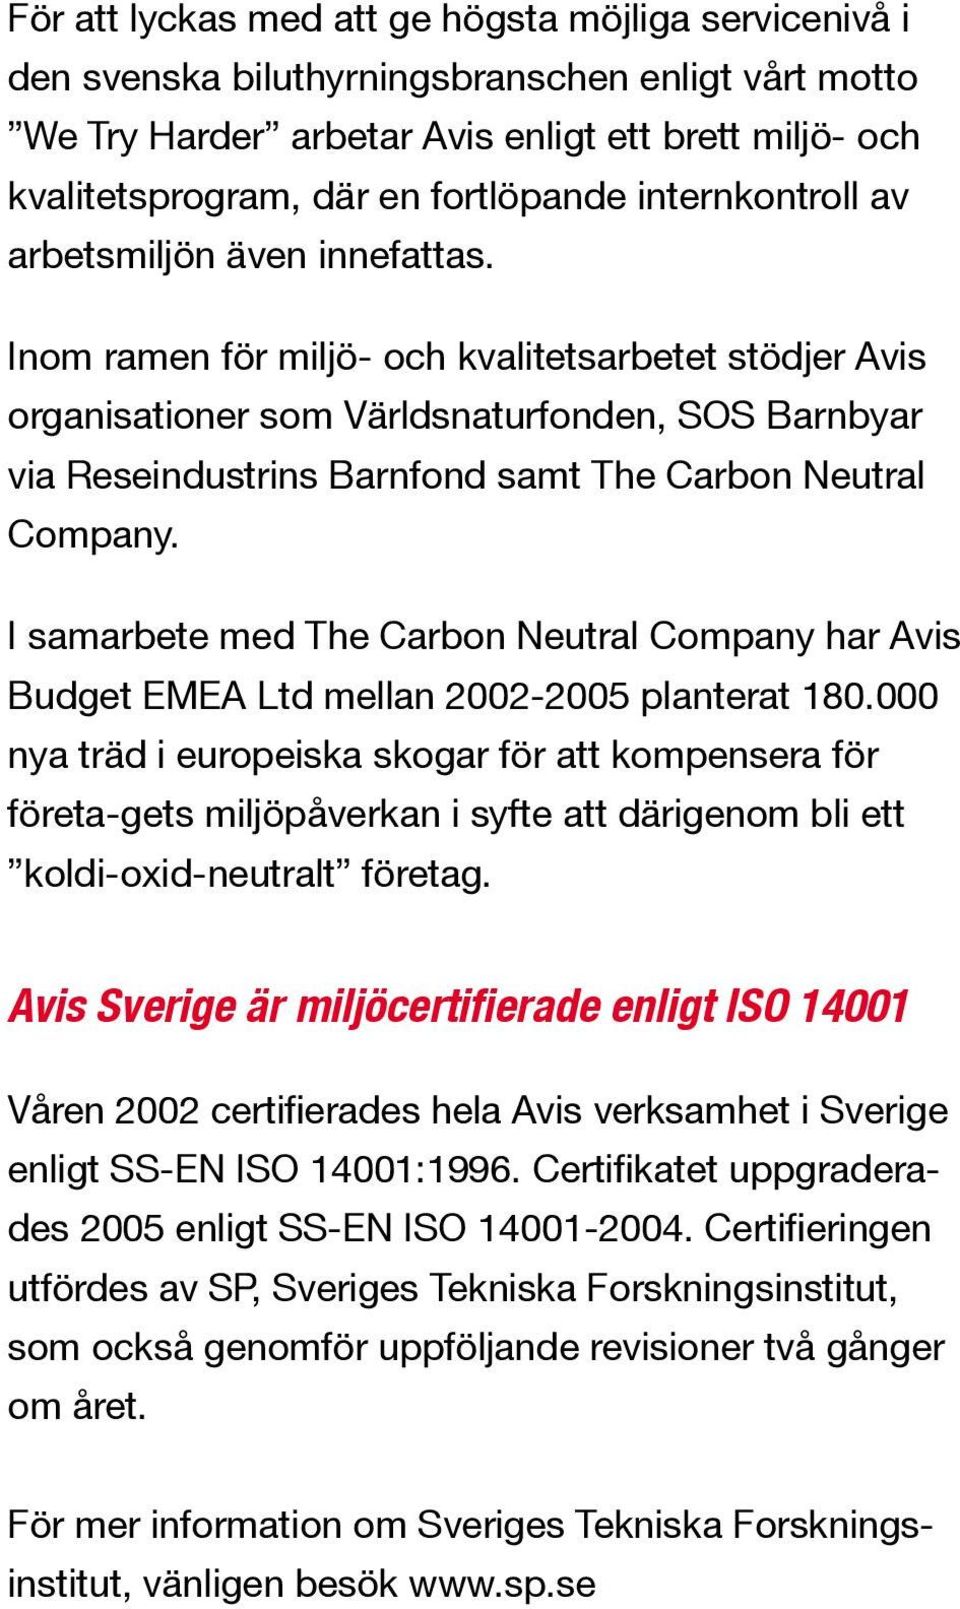 Inom ramen för miljö- och kvalitetsarbetet stödjer Avis organisationer som Världsnaturfonden, SOS Barnbyar via Reseindustrins Barnfond samt The Carbon Neutral Company.